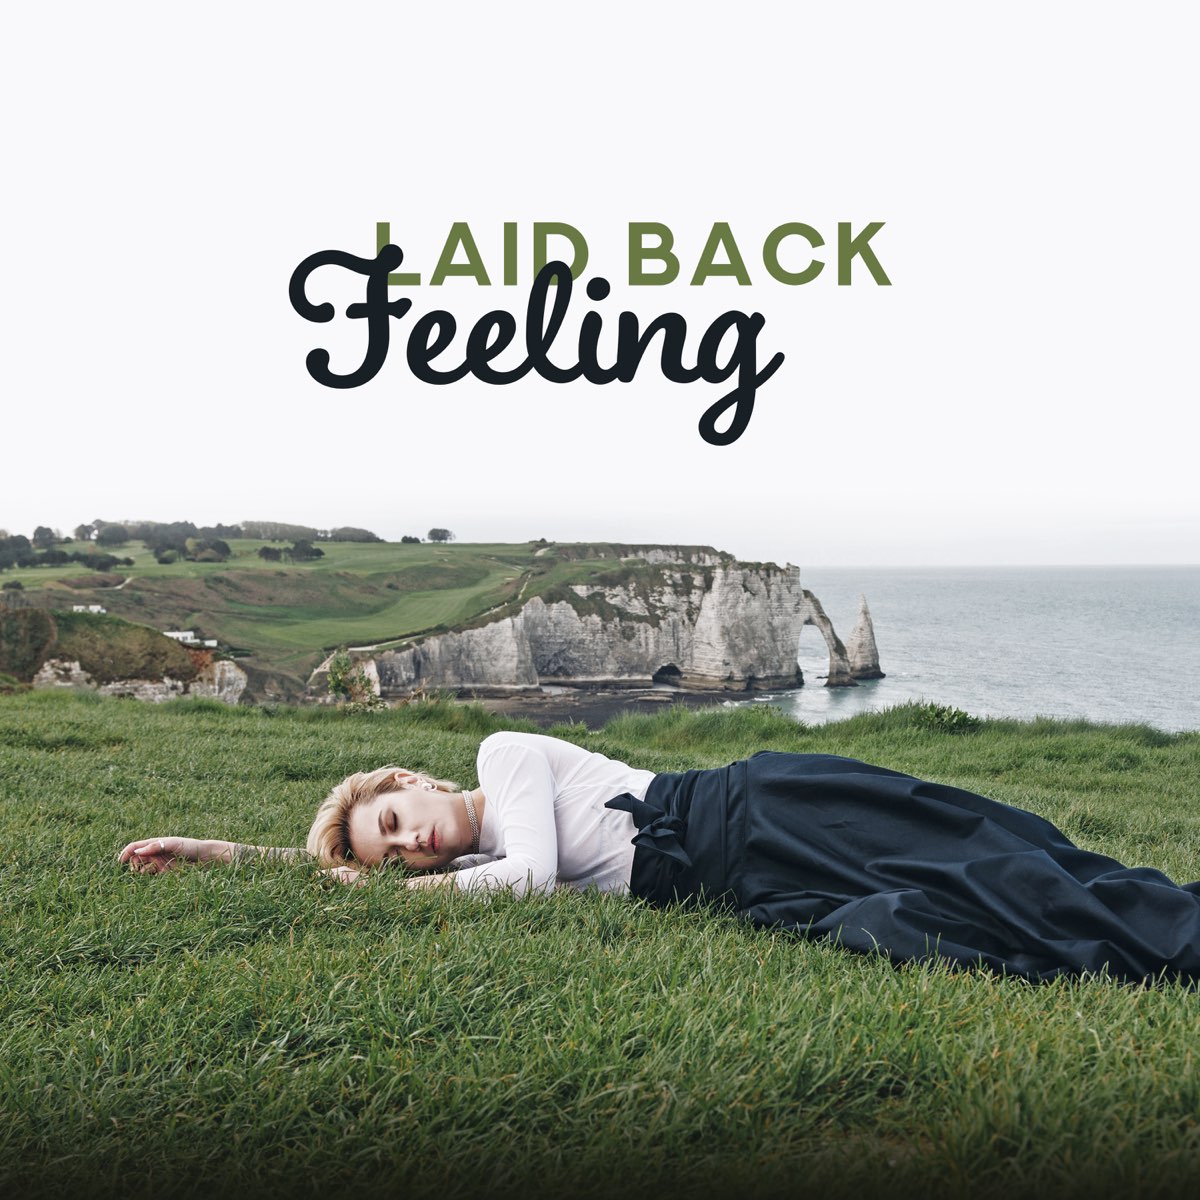 Feelings back olivia. Feeling бак. Laid back. Laid back - Healing feeling (2019).